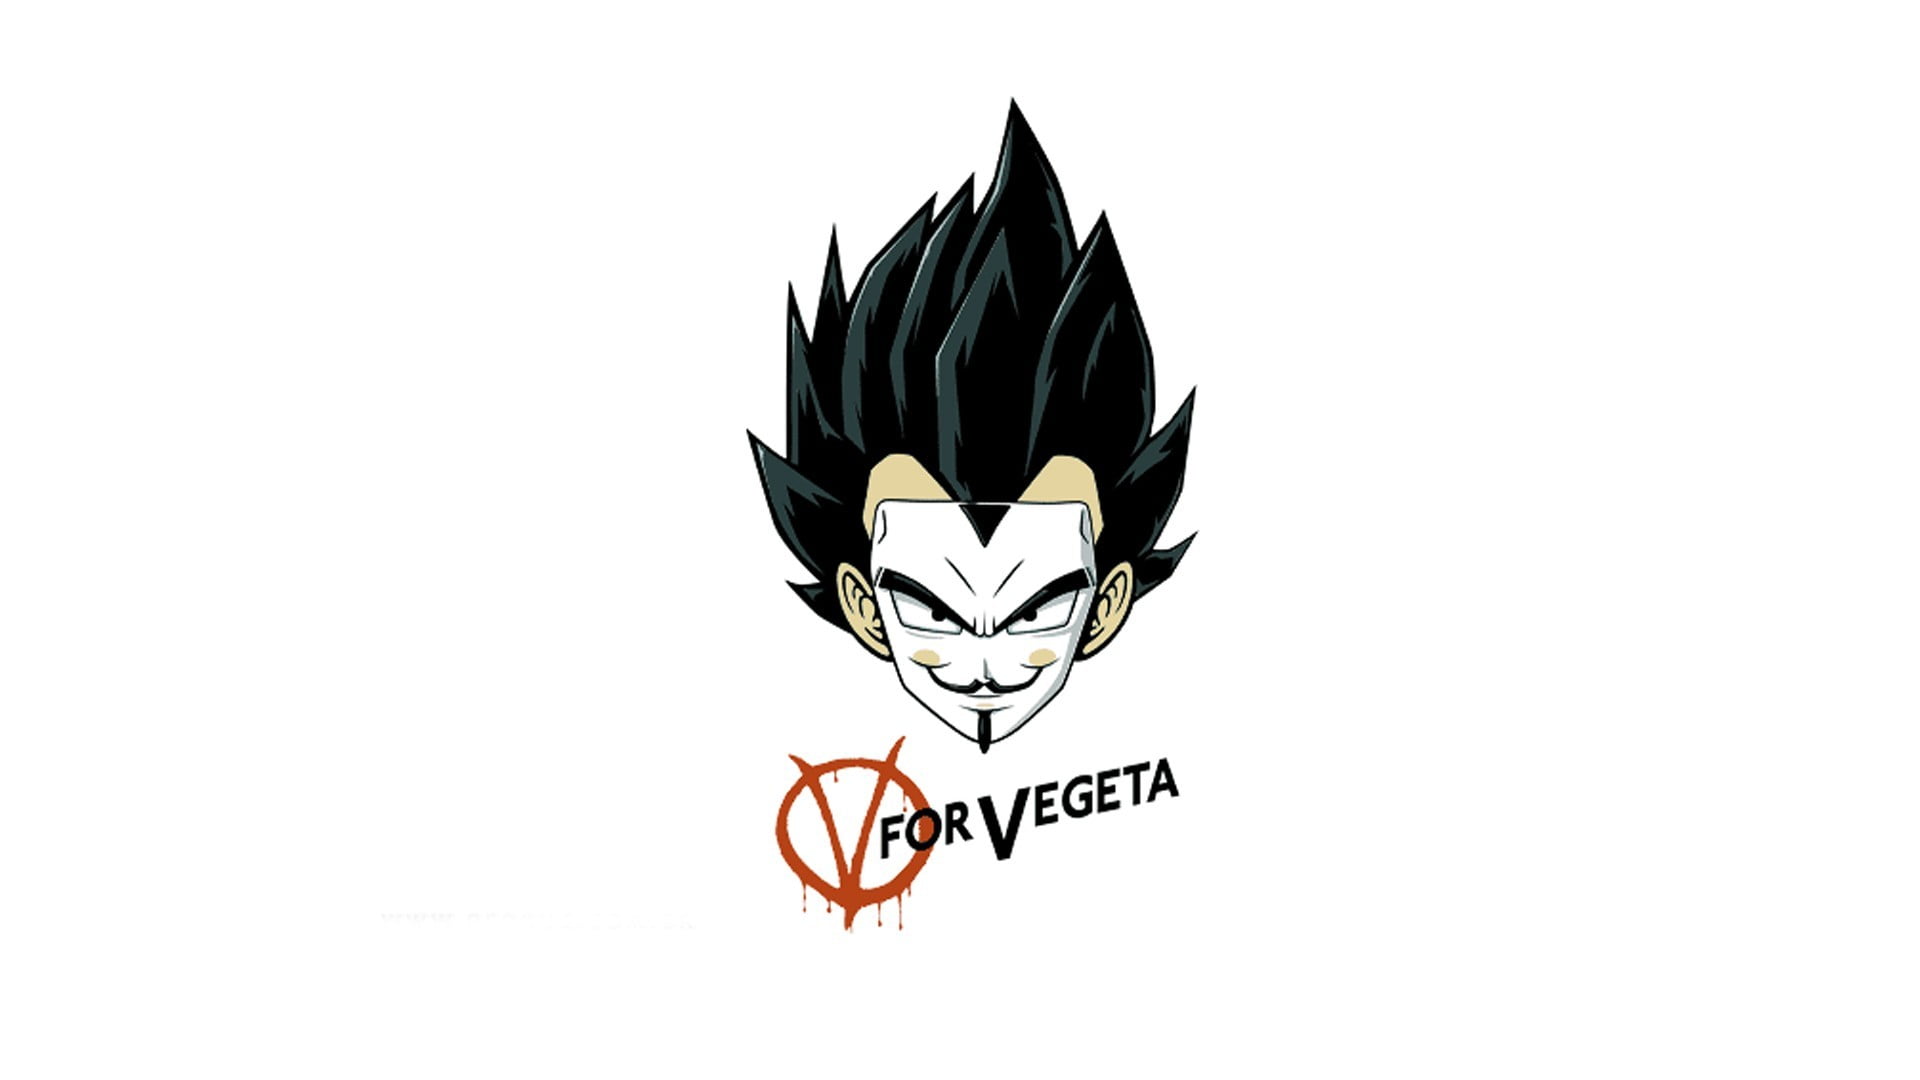 Dragon Ball Z V for Vegeta illustration, Super Saiyan, fan art